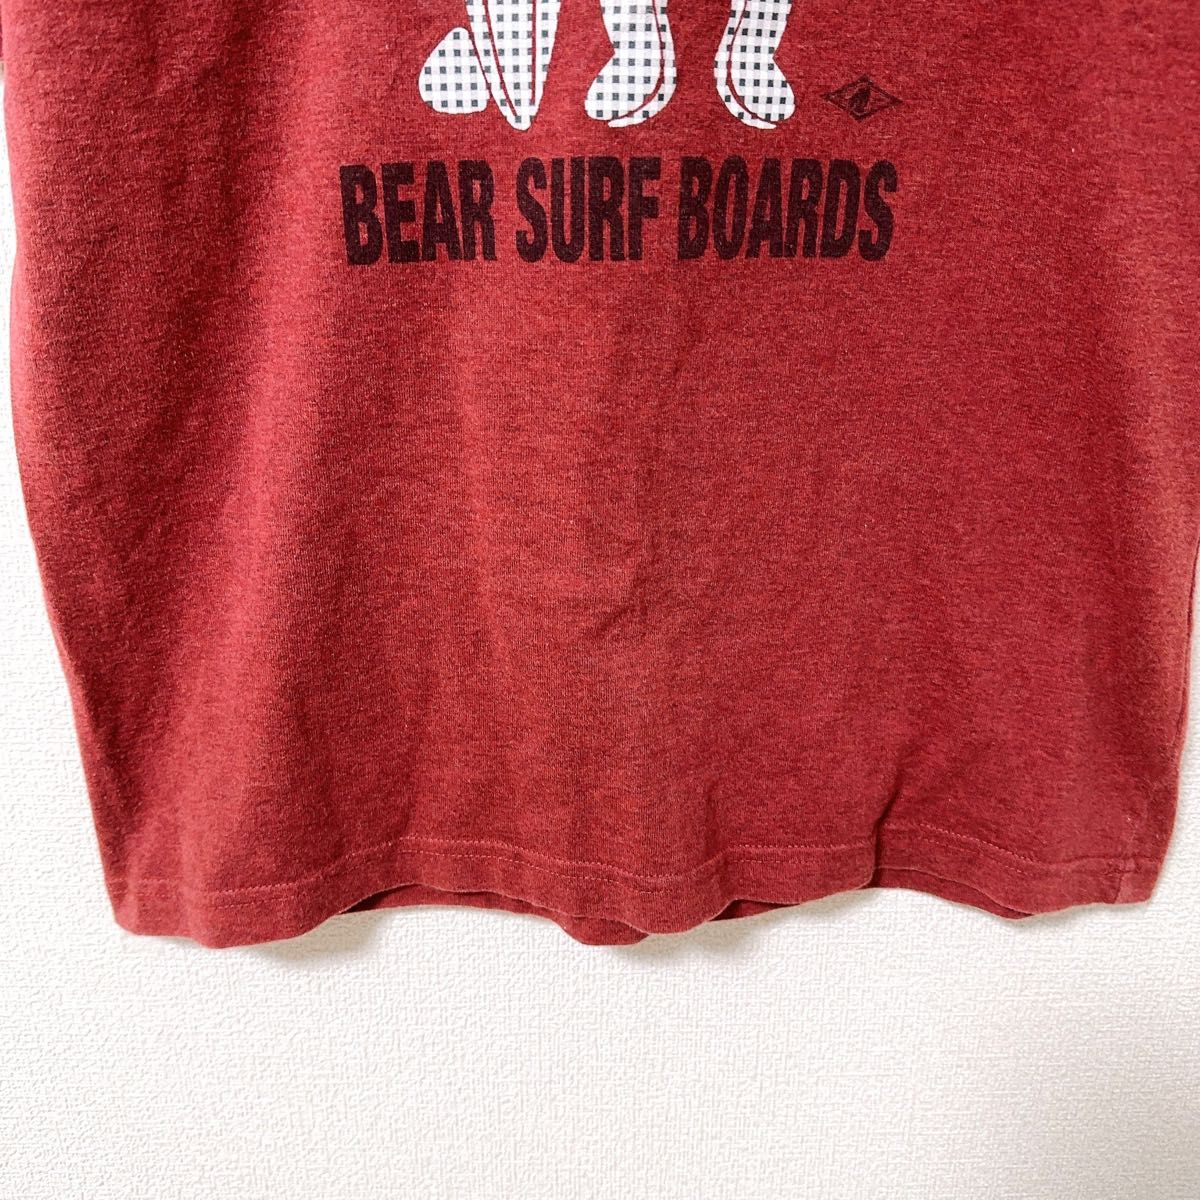 BEAR SURF BOARDS ベアー サーフボード 半袖 Tシャツ M 古着